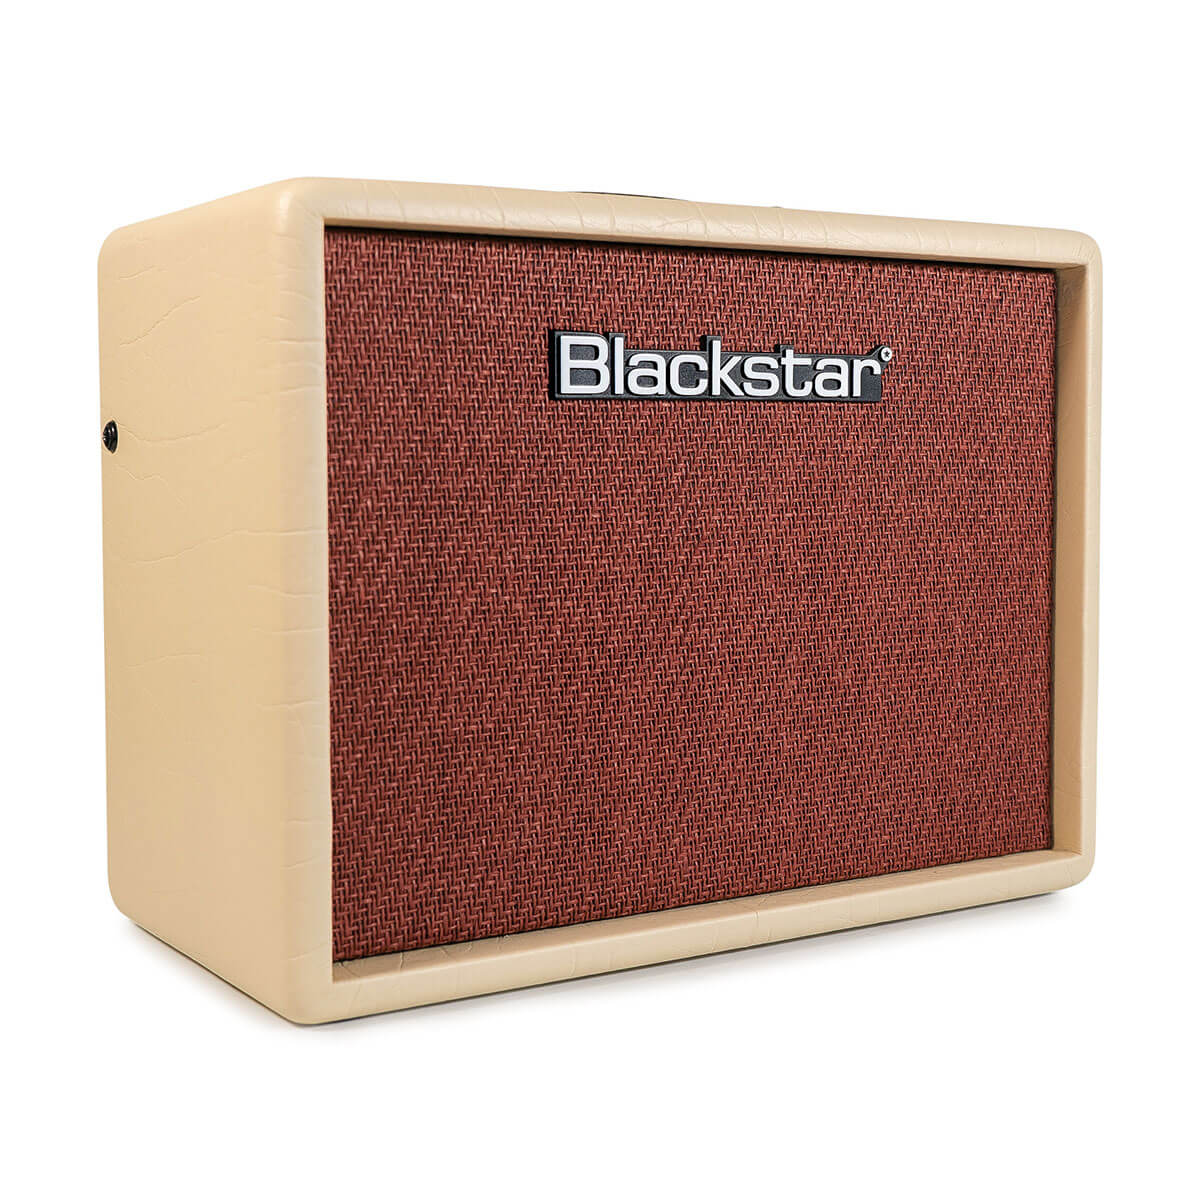 Blackstar Debut 15E 15-Watt Combo Practice Amp with FX